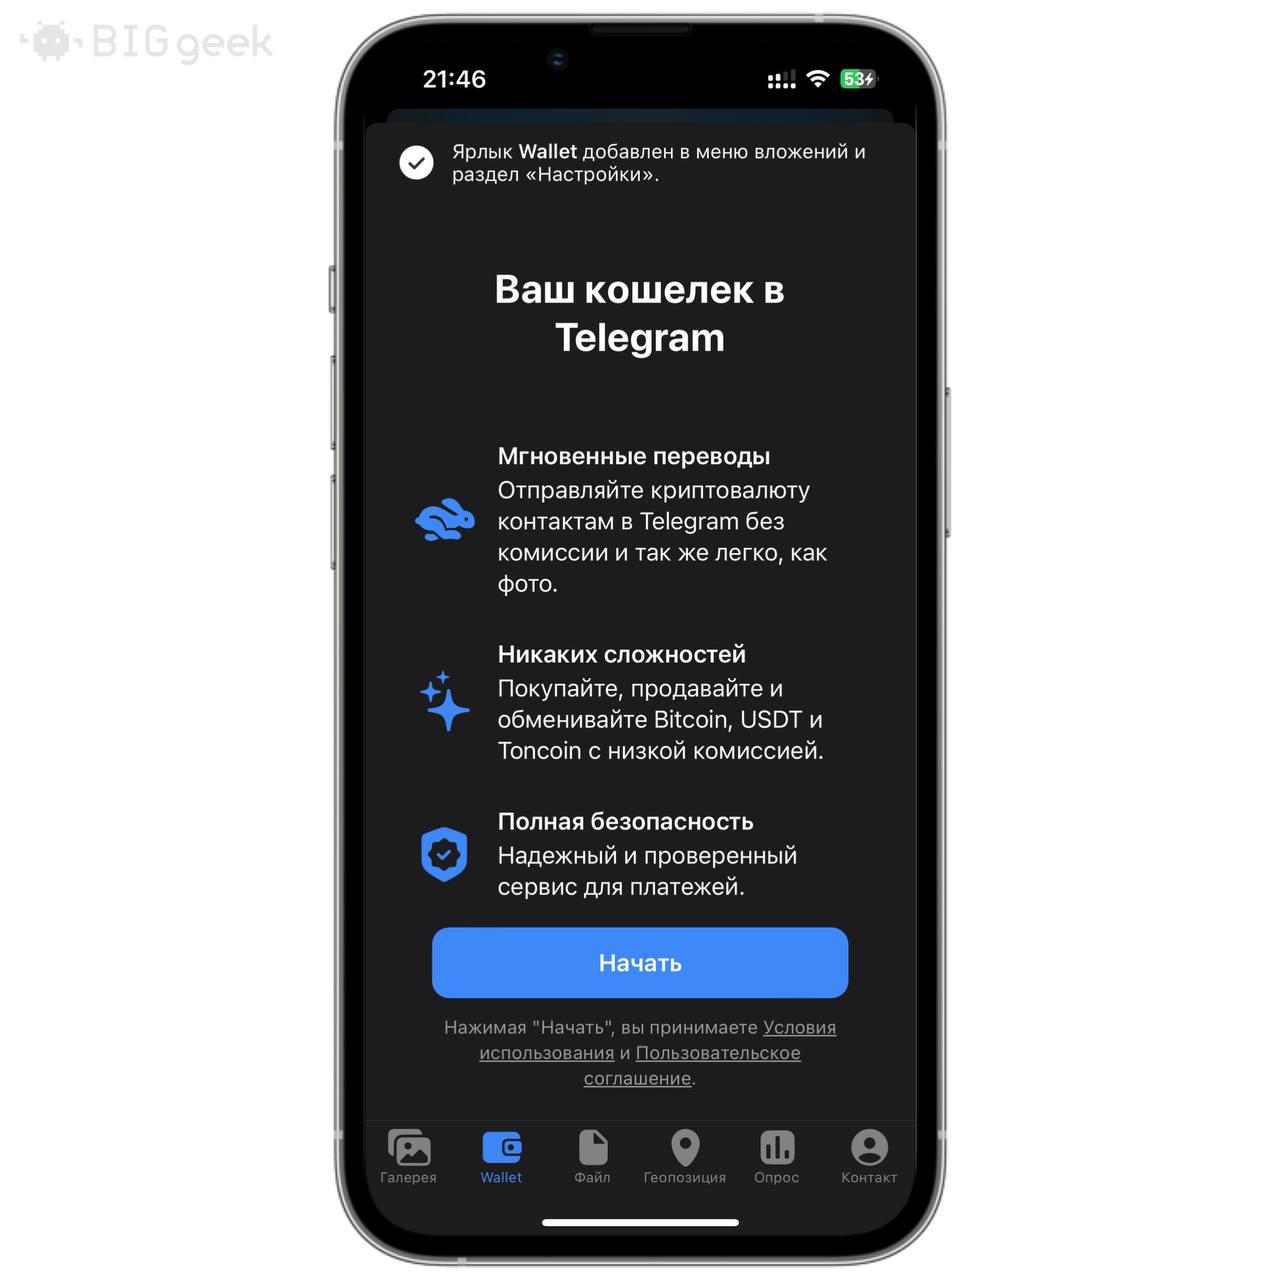 Как обновить телеграмм на телефоне андроид бесплатно на русском языке без регистрации фото 75